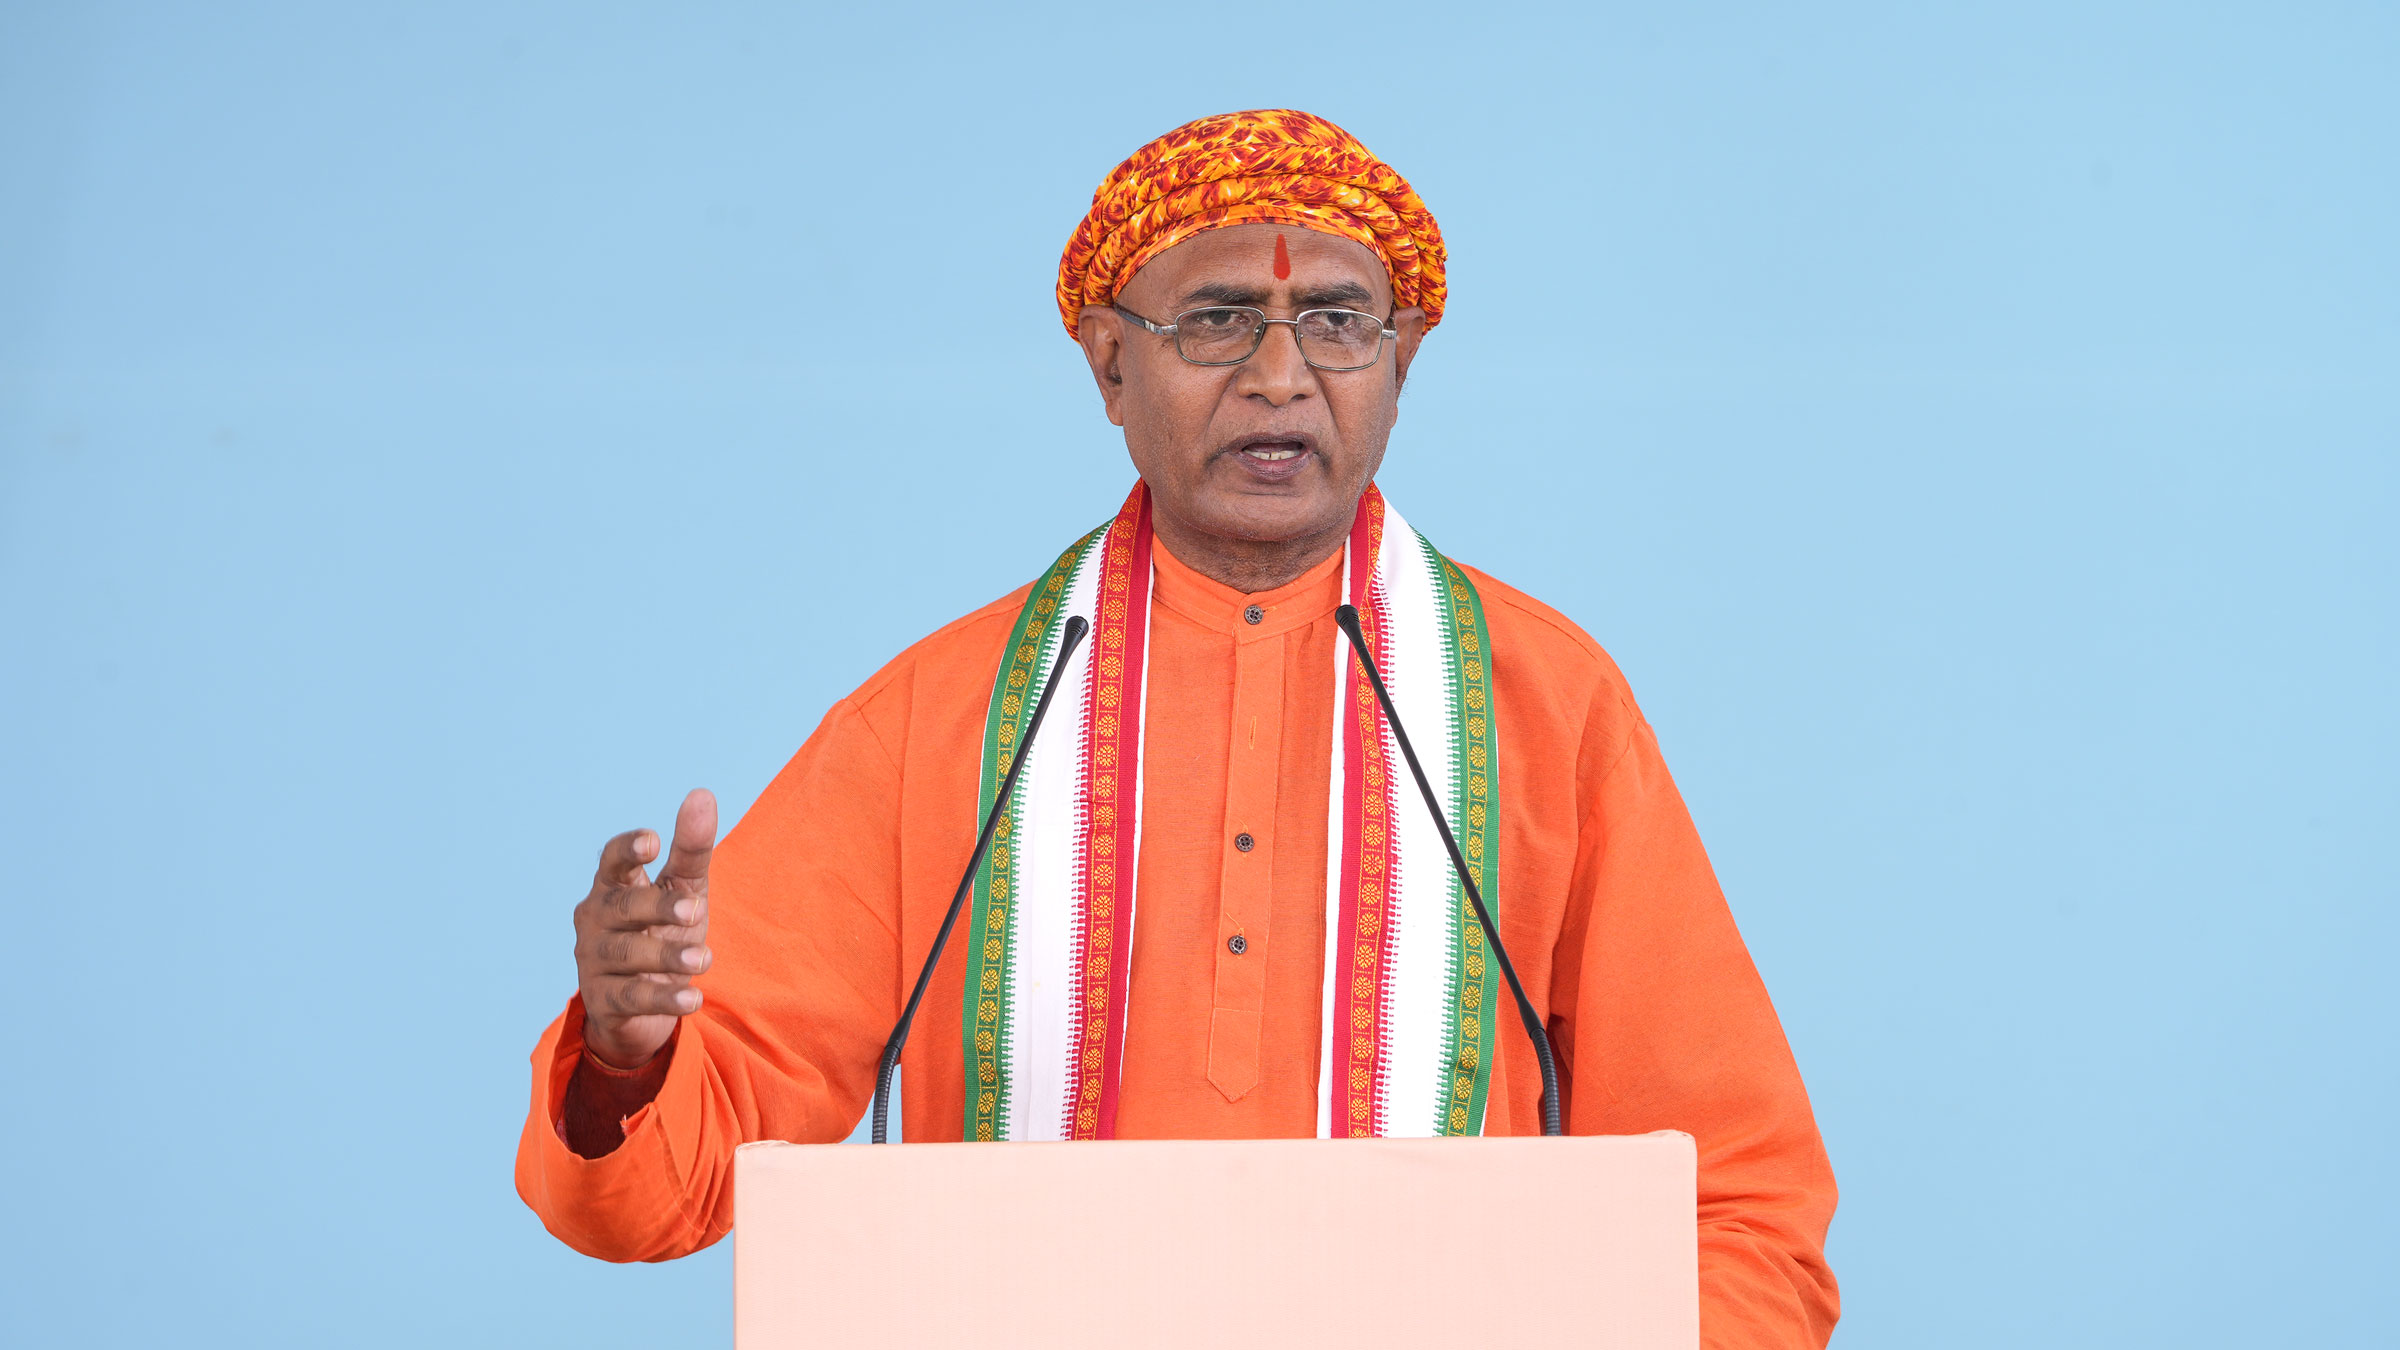 Acharya Chandra Kishore Parashar (Founder, Antarashtriya Sanatan Hindu Vahini, Bihar) talking about Hindu Samanvay Samiti’s struggle in Muzaffarpur, Bihar